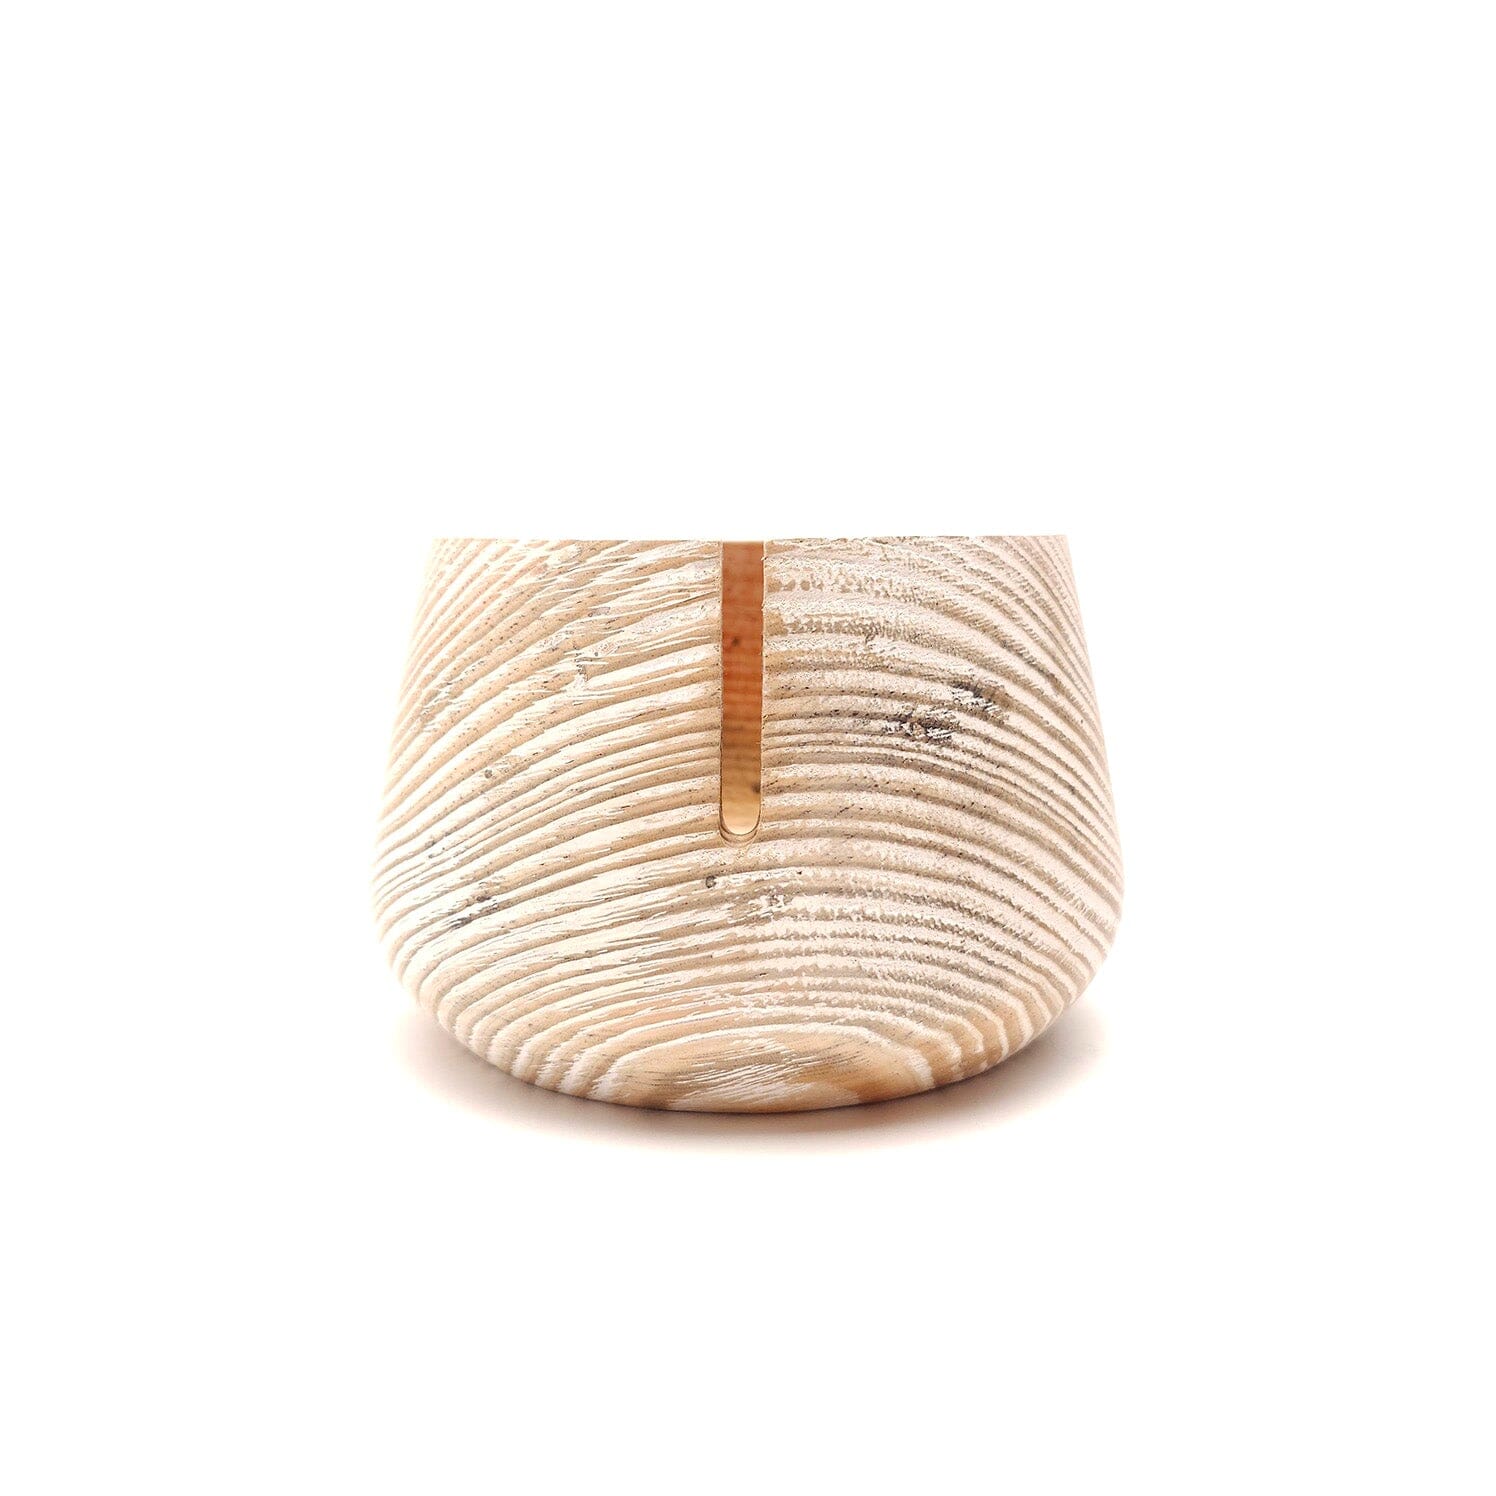 Handmade Minimalist Pine Wood Yarn Bowls Yarn Bowl FurlsCrochet 